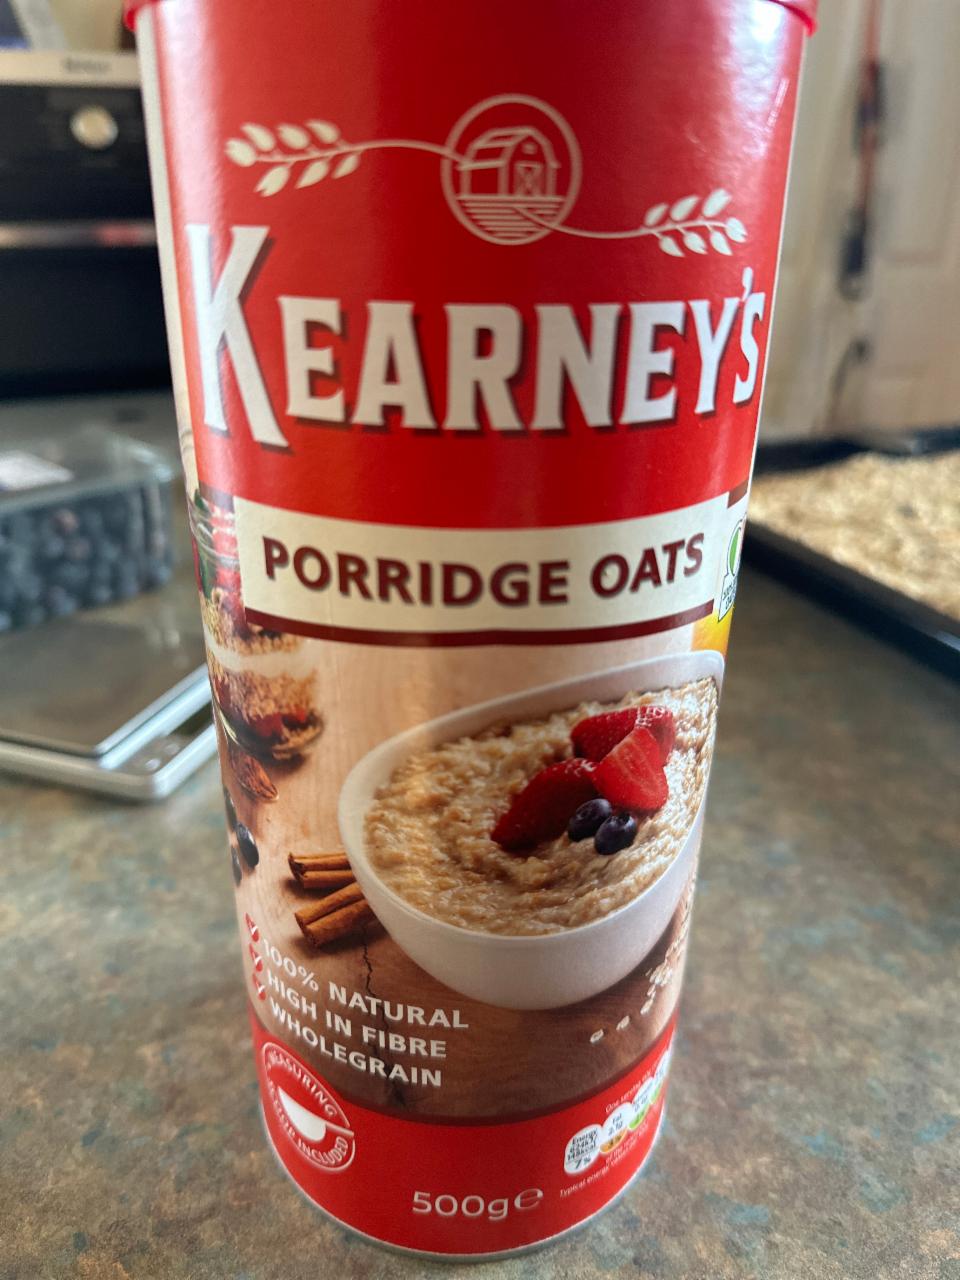 Фото - Porridge Oats Kearney's